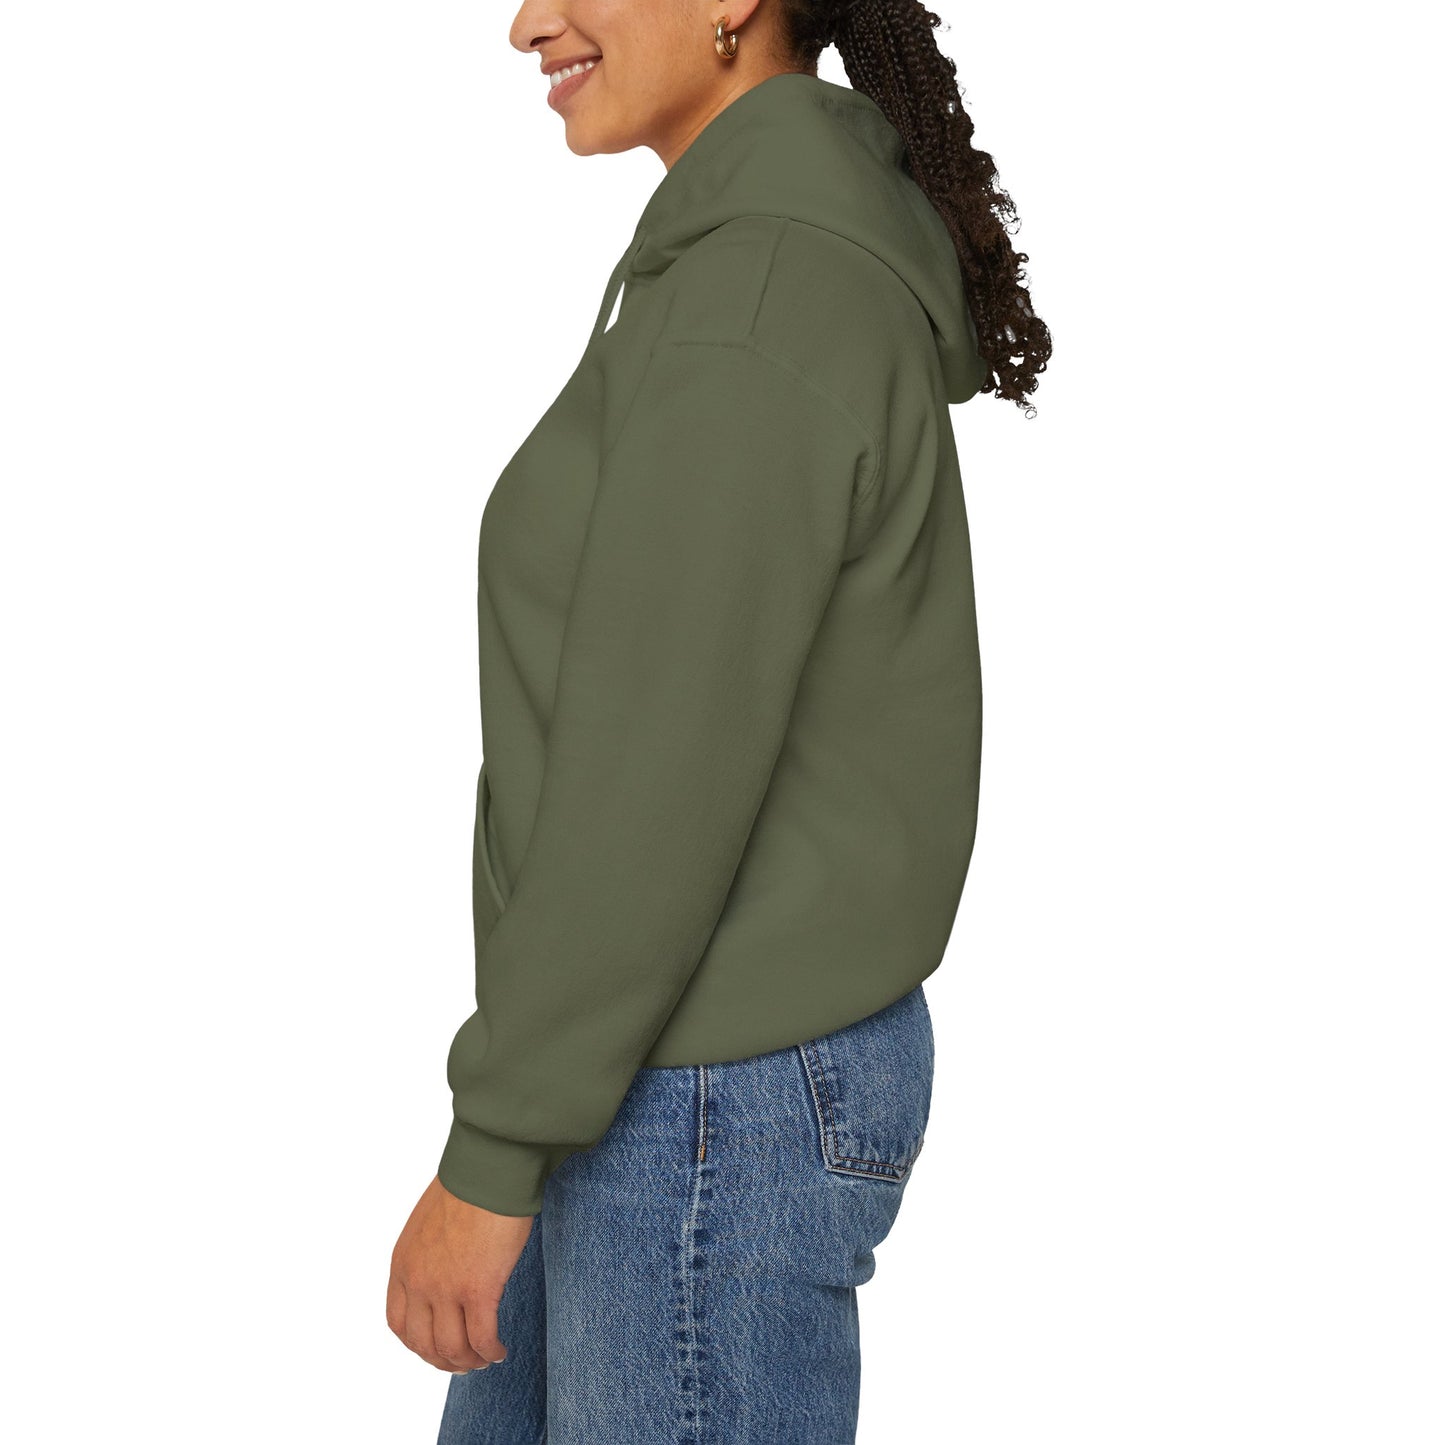 watermolon Unisex Heavy Blend™ Hooded Sweatshirt